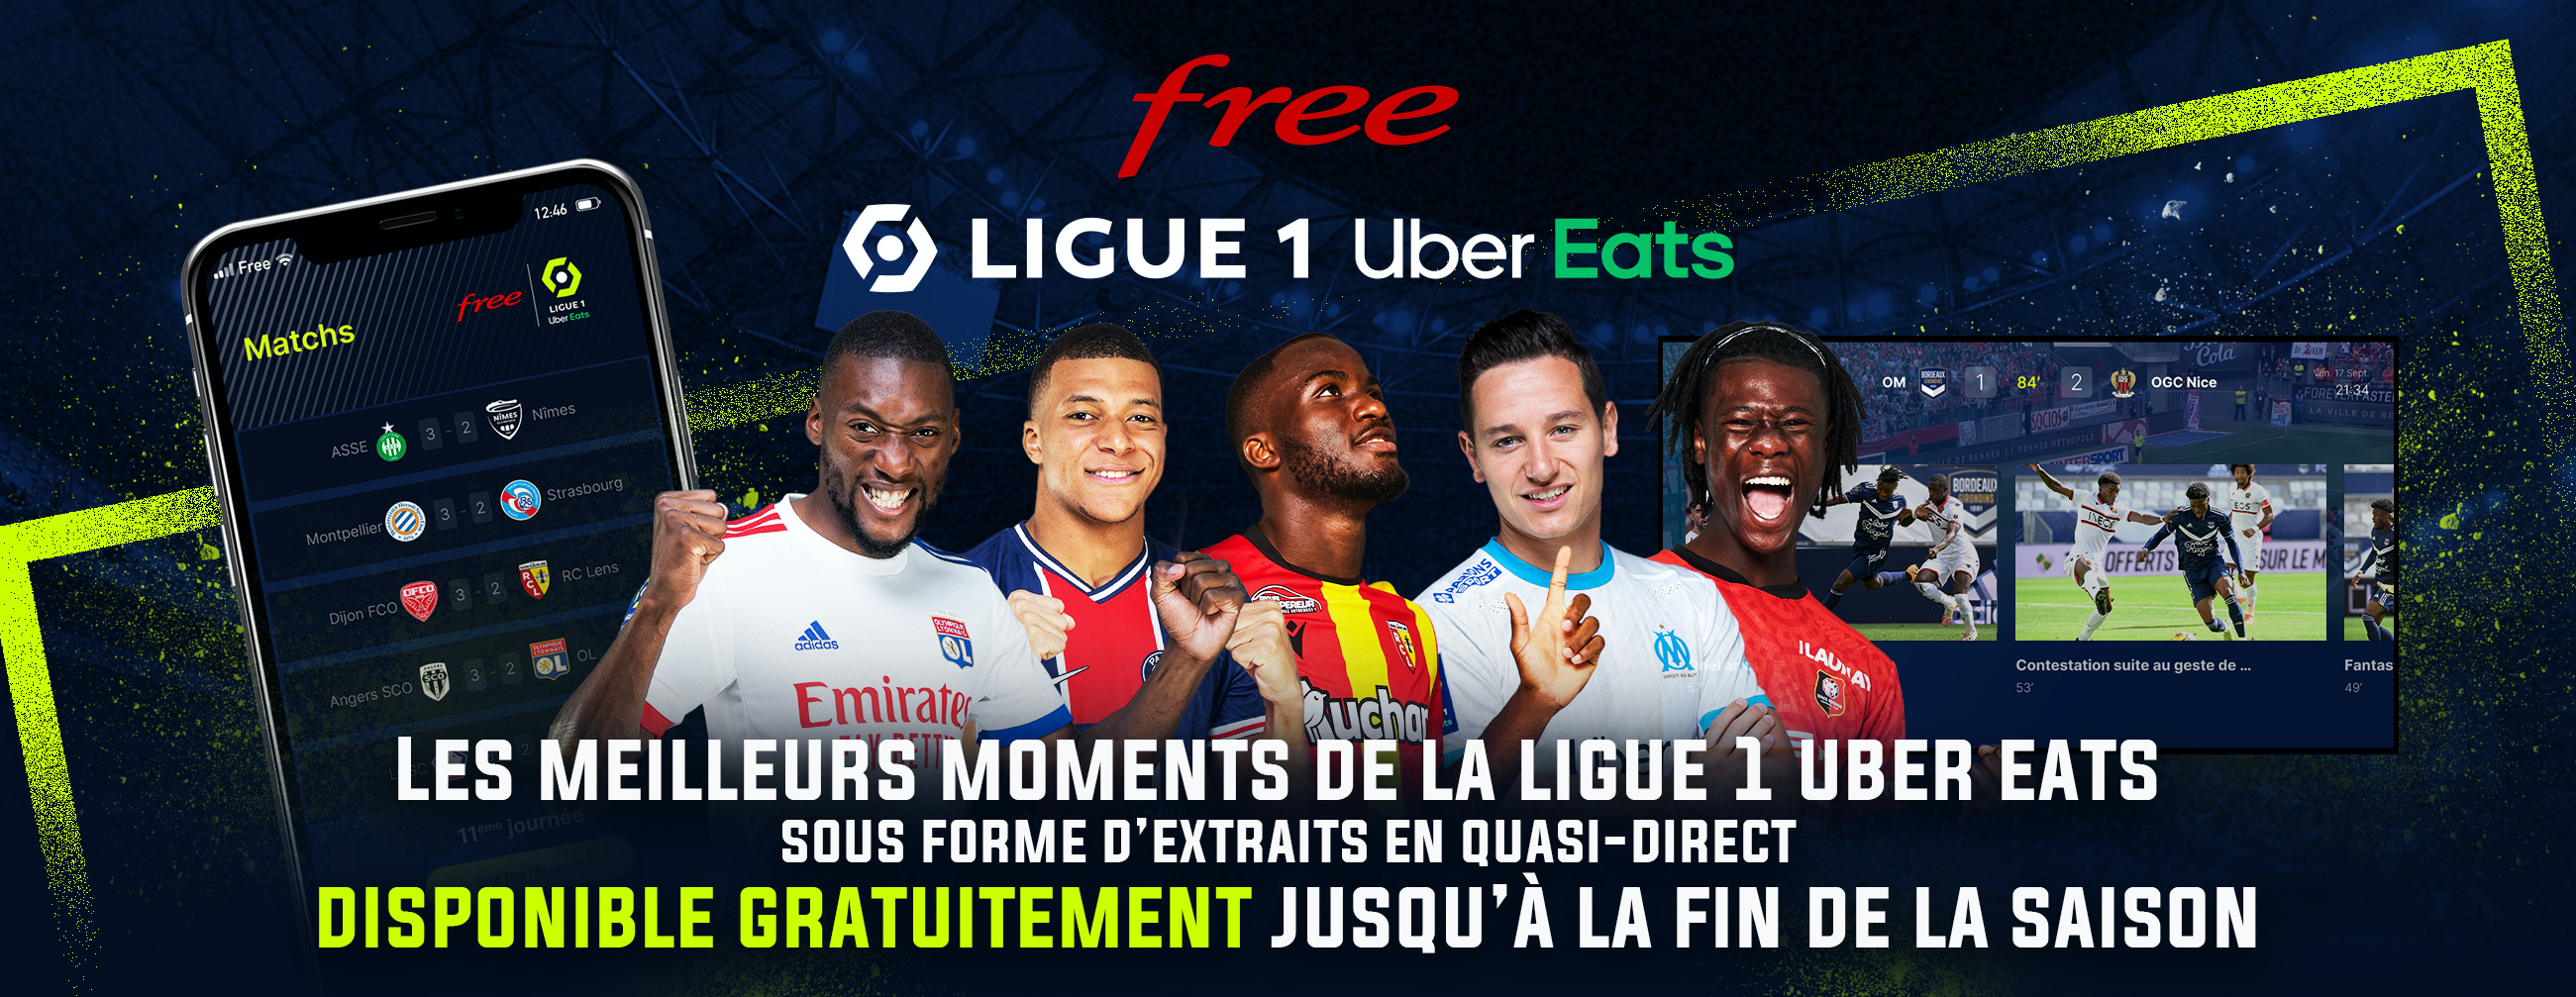 L’application Free Ligue 1 Uber Eats continuera d’être accessible gratuitement jusqu’à la fin de la saison 2020-2021